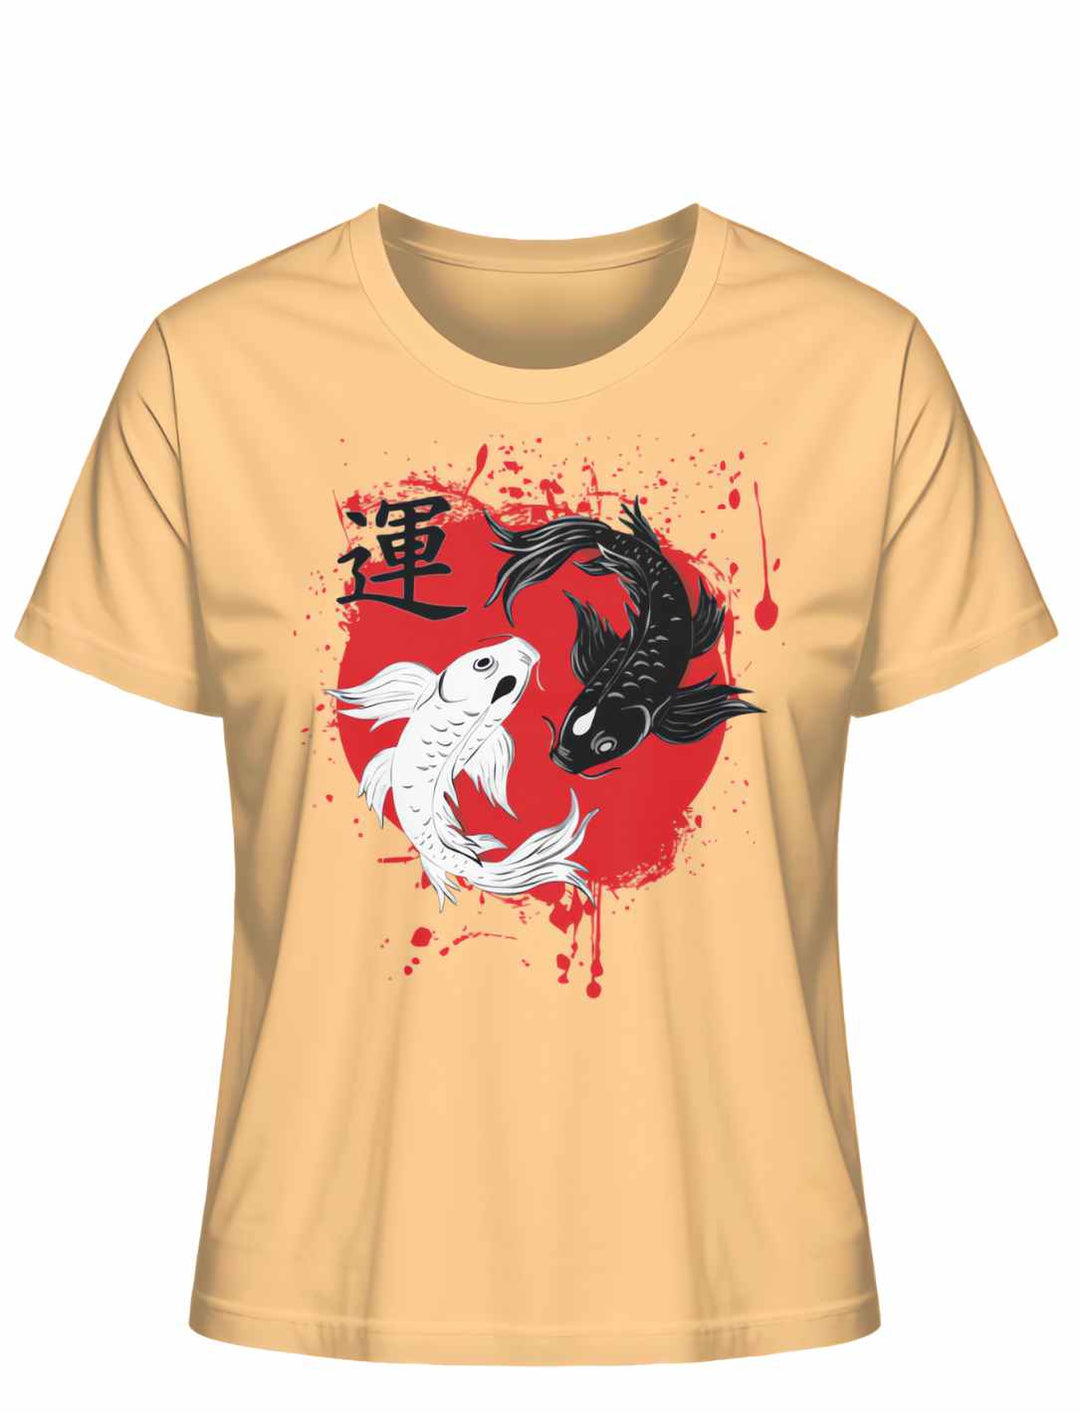 Harmonic Koi Damen T-Shirt in der Farbe Nispero – Feminines Design mit japanischem Flair